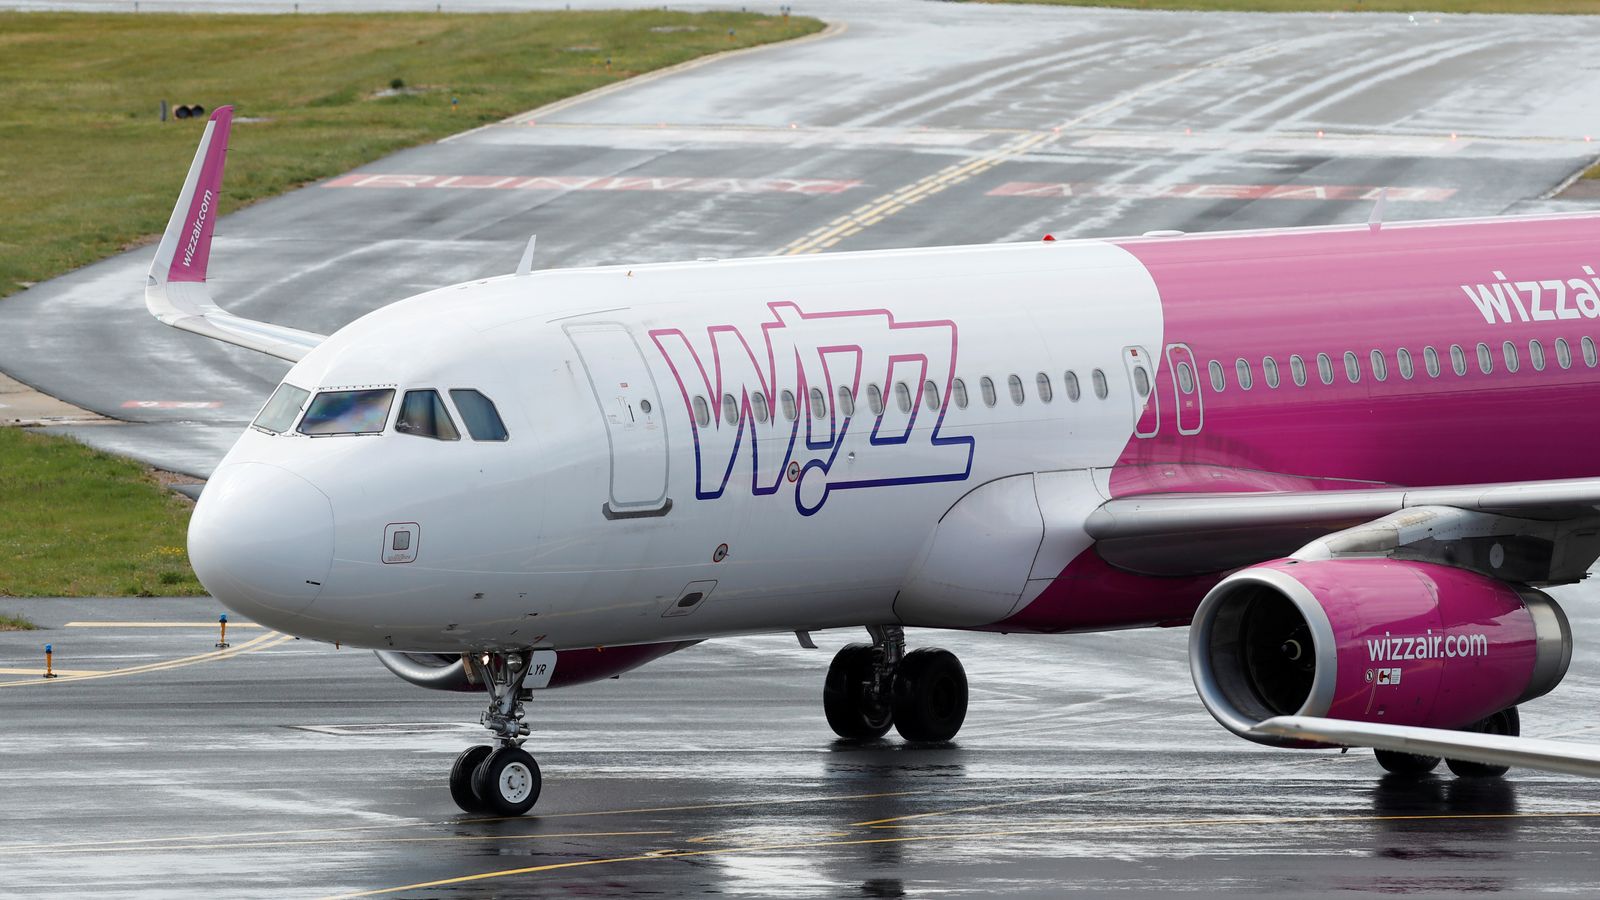 Профсоюз пилотов в ярости, поскольку глава Wizz Air призывает утомленный персонал приложить «дополнительные усилия» |  Новости бизнеса